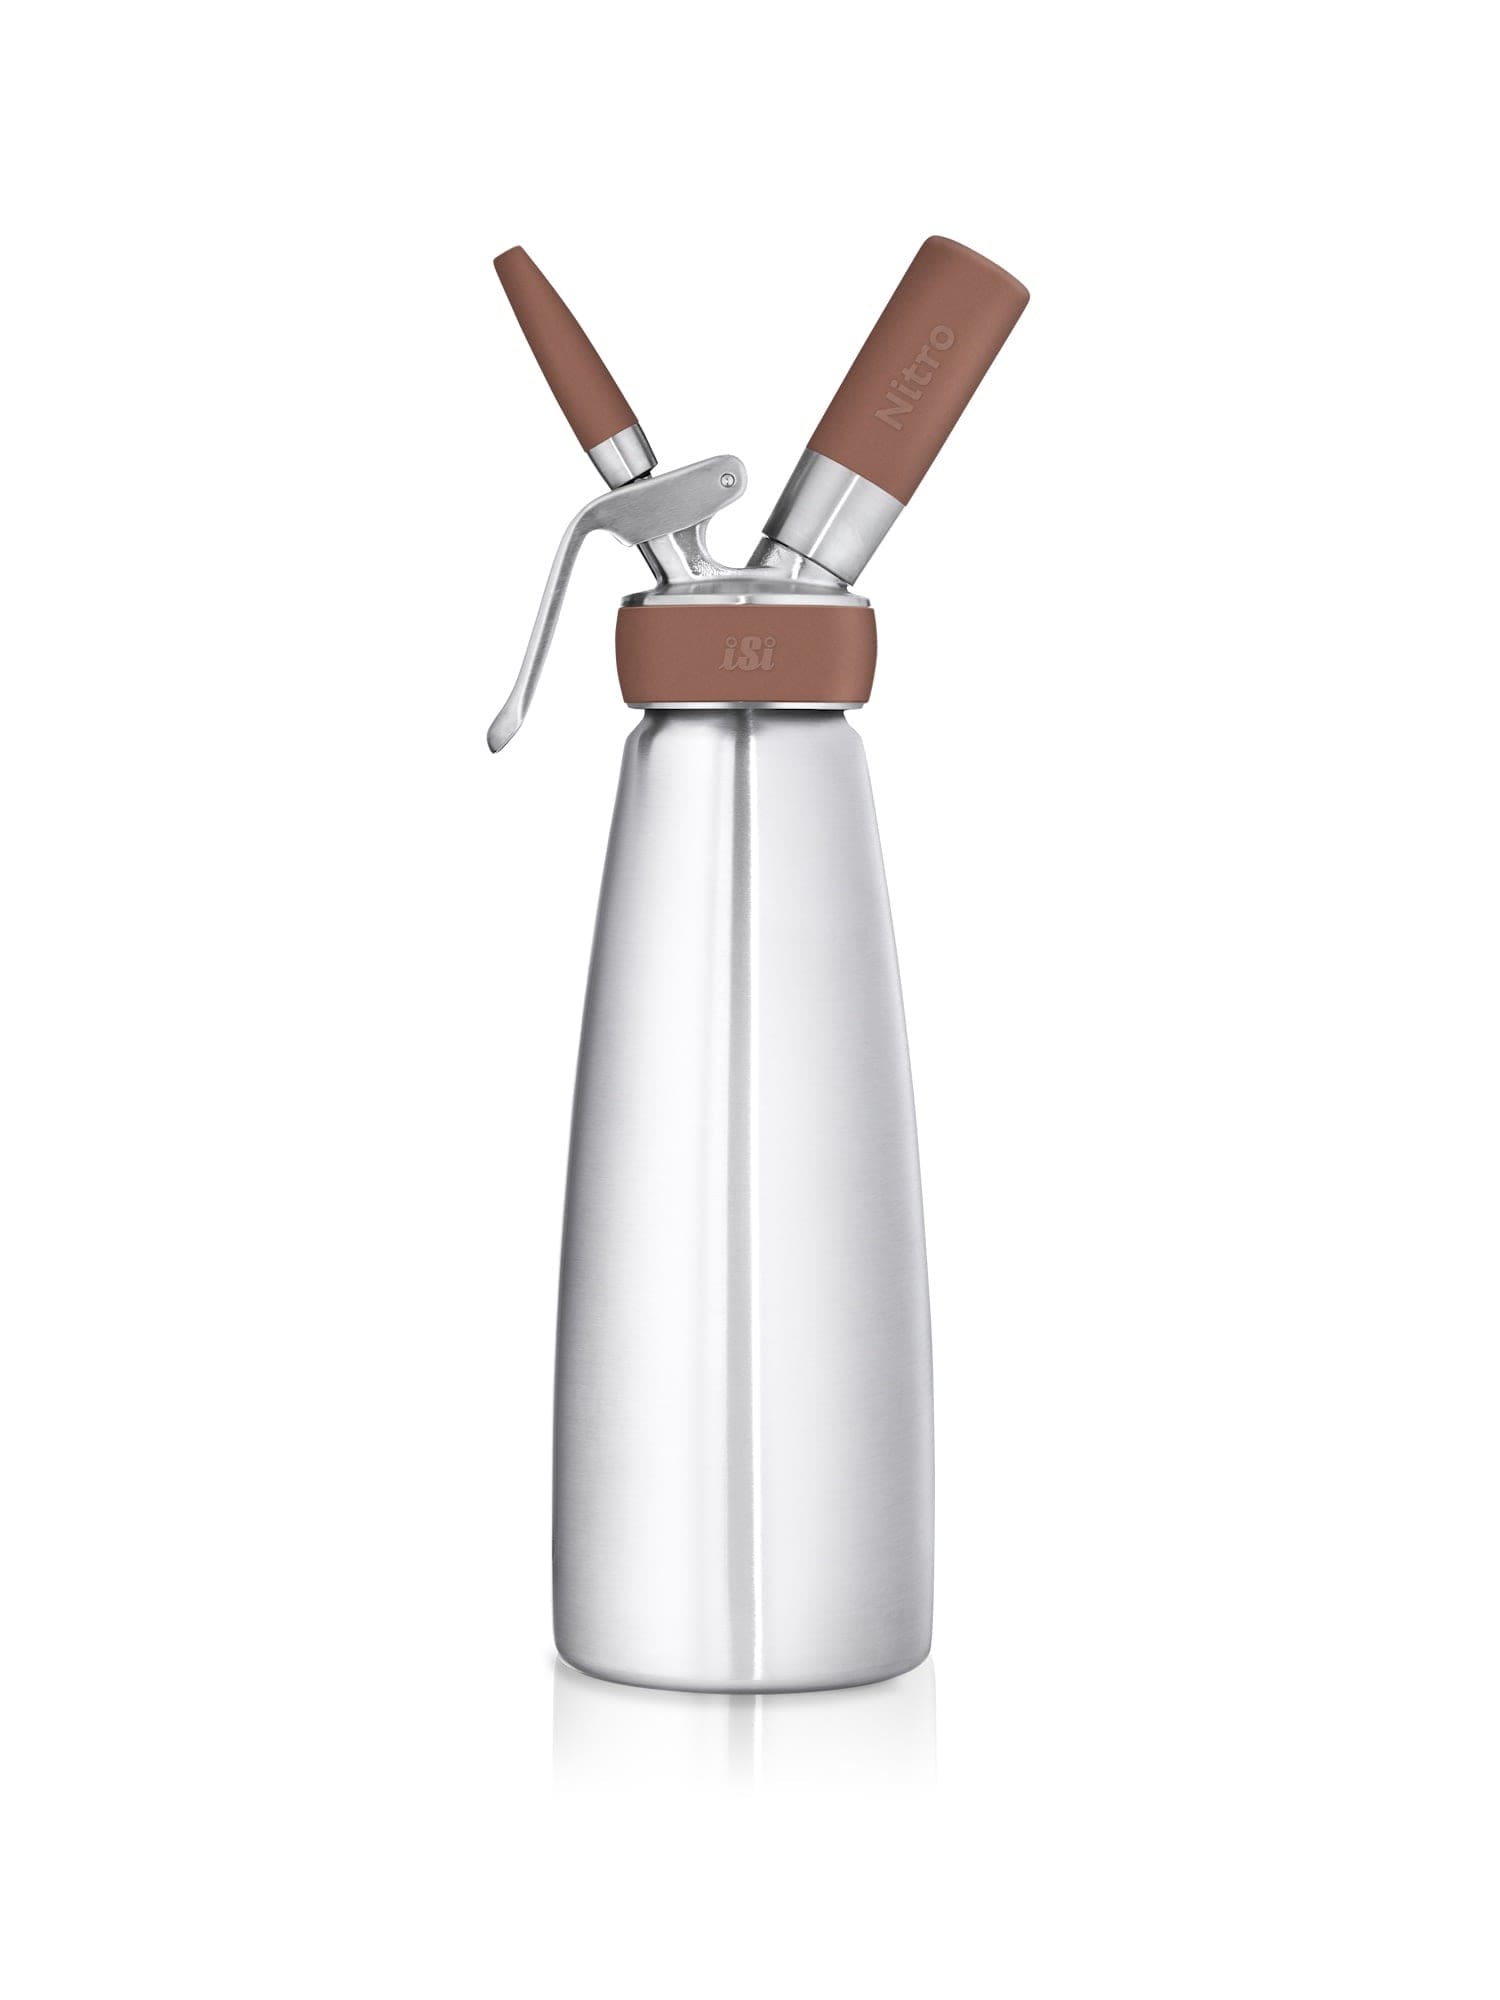 iSi Nitro Whip - En professionel sifon til at lave lækker nitrogeninfunderet kaffe og cocktails.